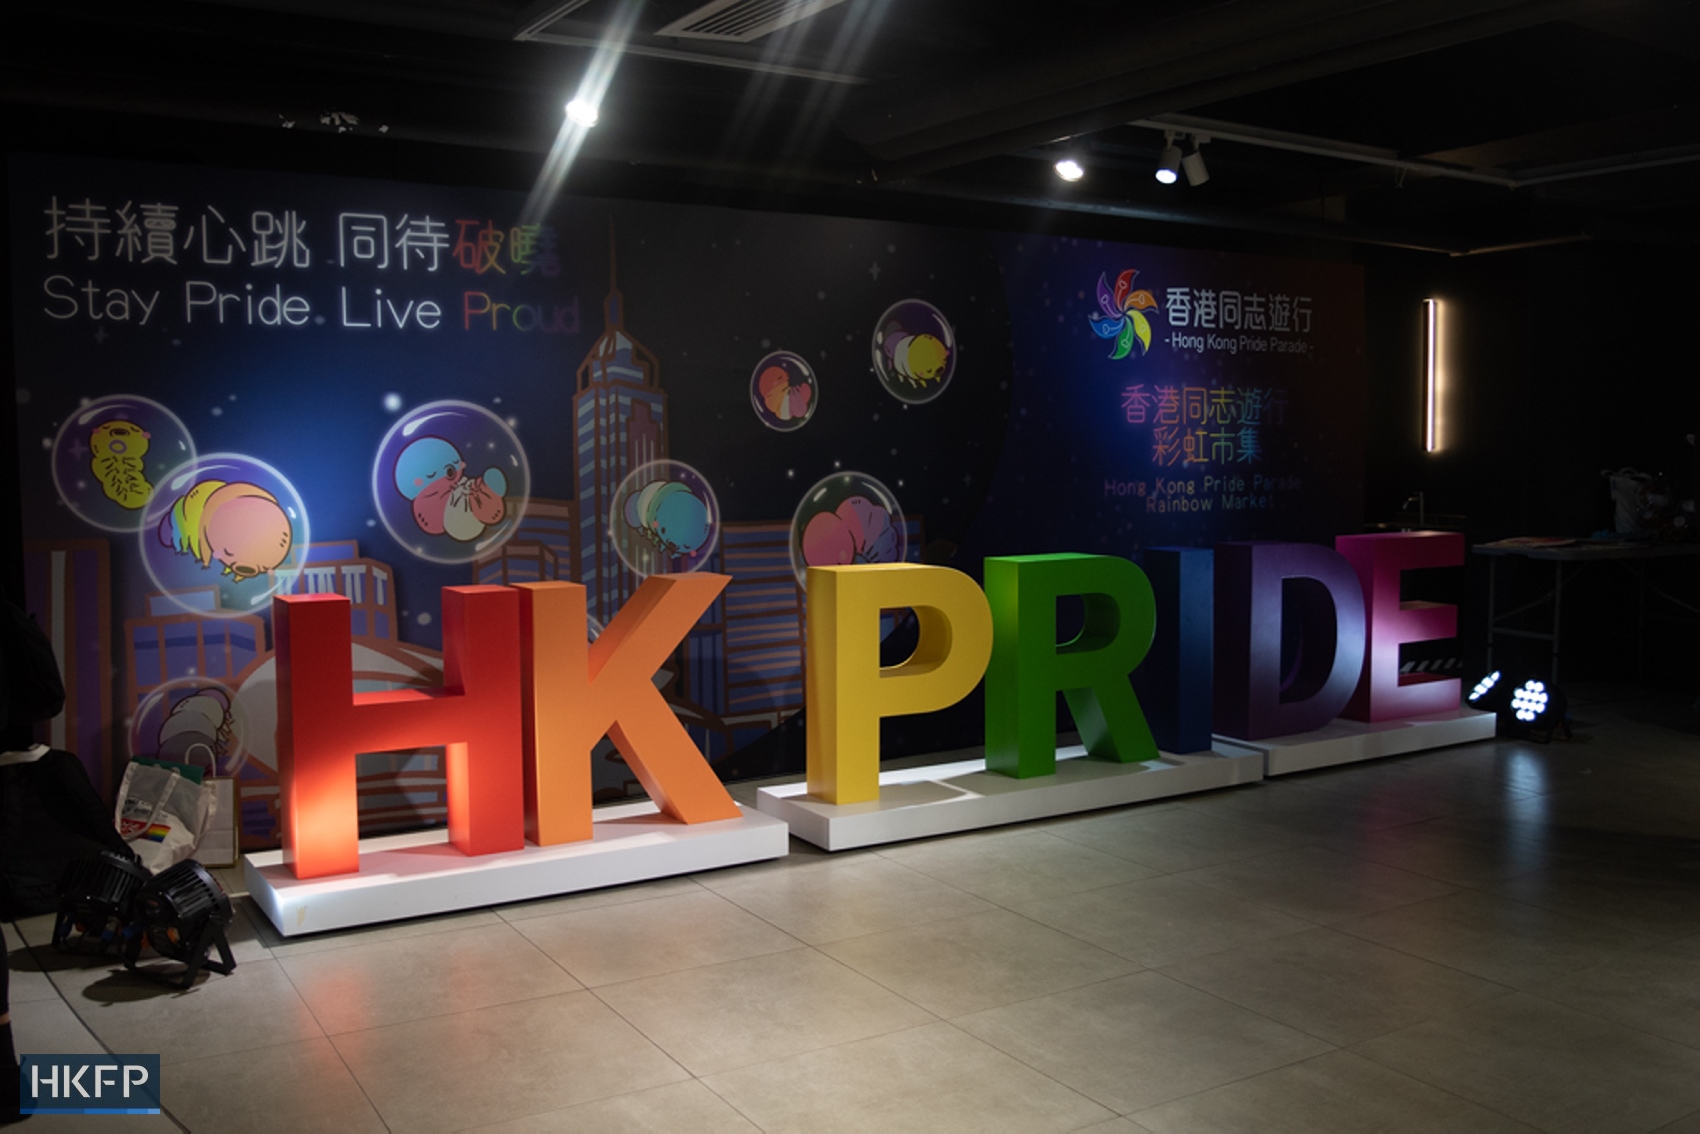 Hong Kong pride parade 2022 rainbow market